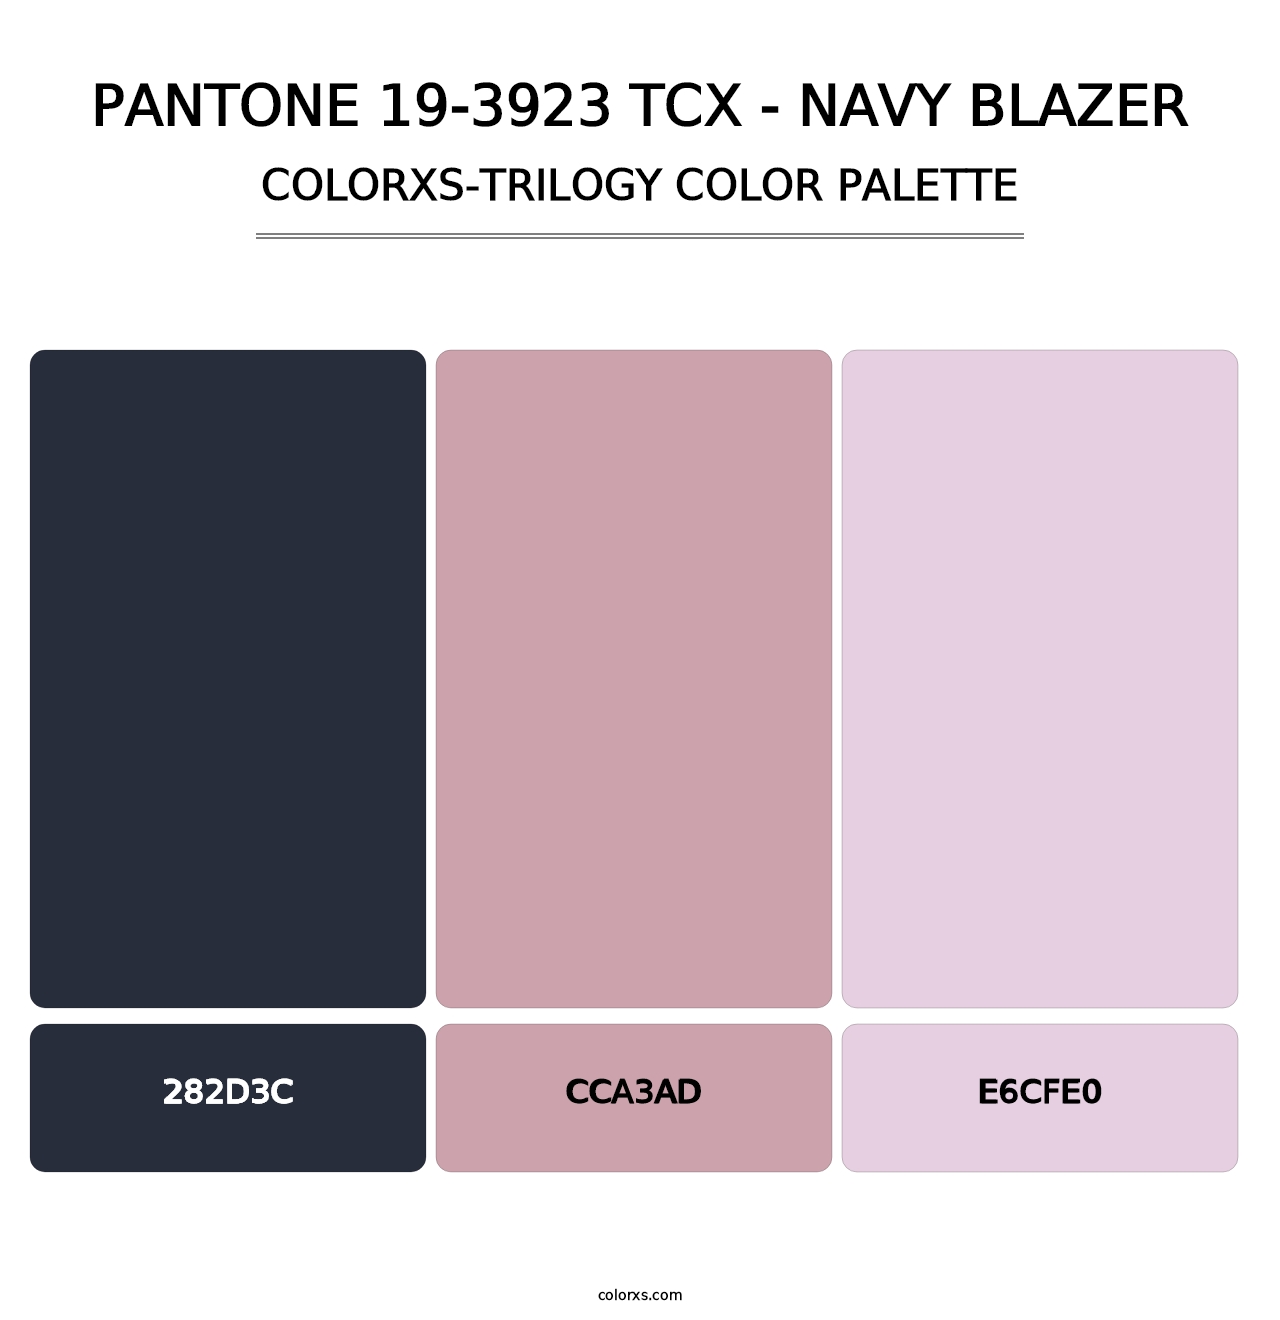 PANTONE 19-3923 TCX - Navy Blazer - Colorxs Trilogy Palette